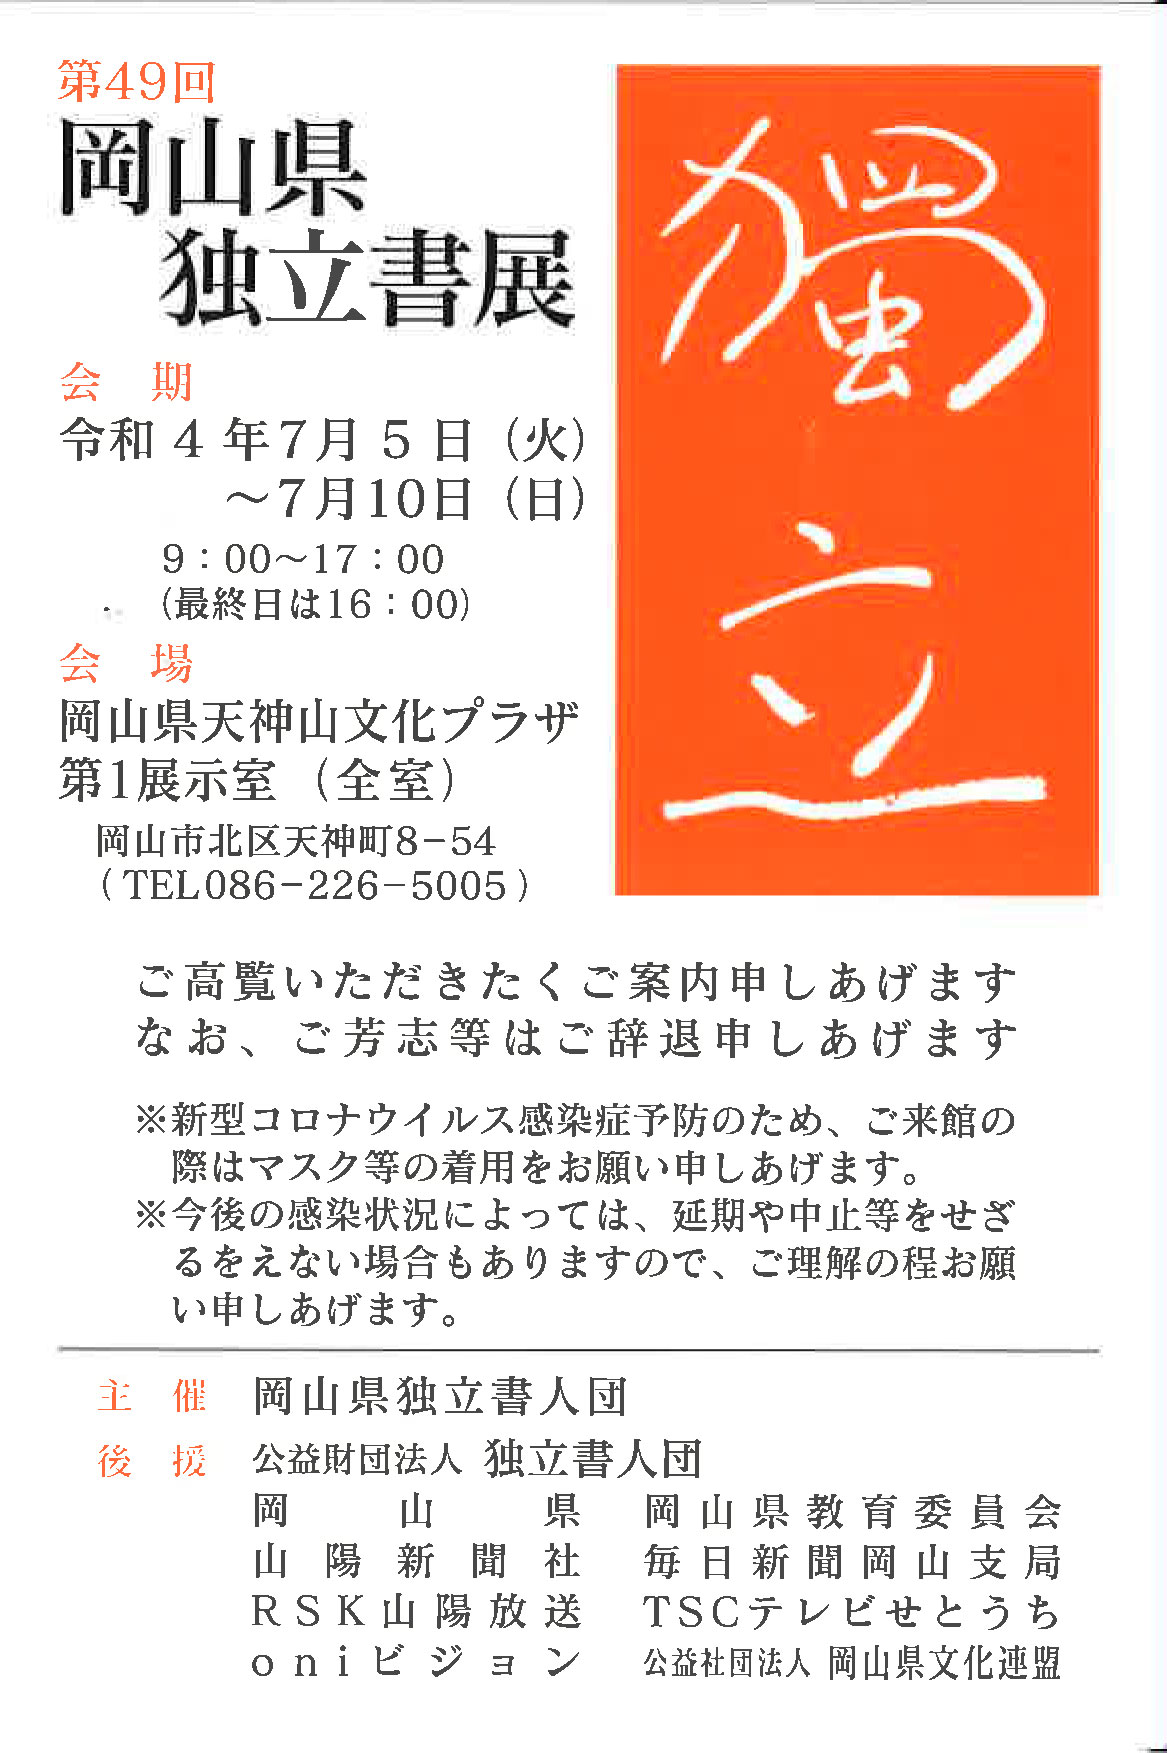 【展覧会情報】第49回 岡山県独立書展